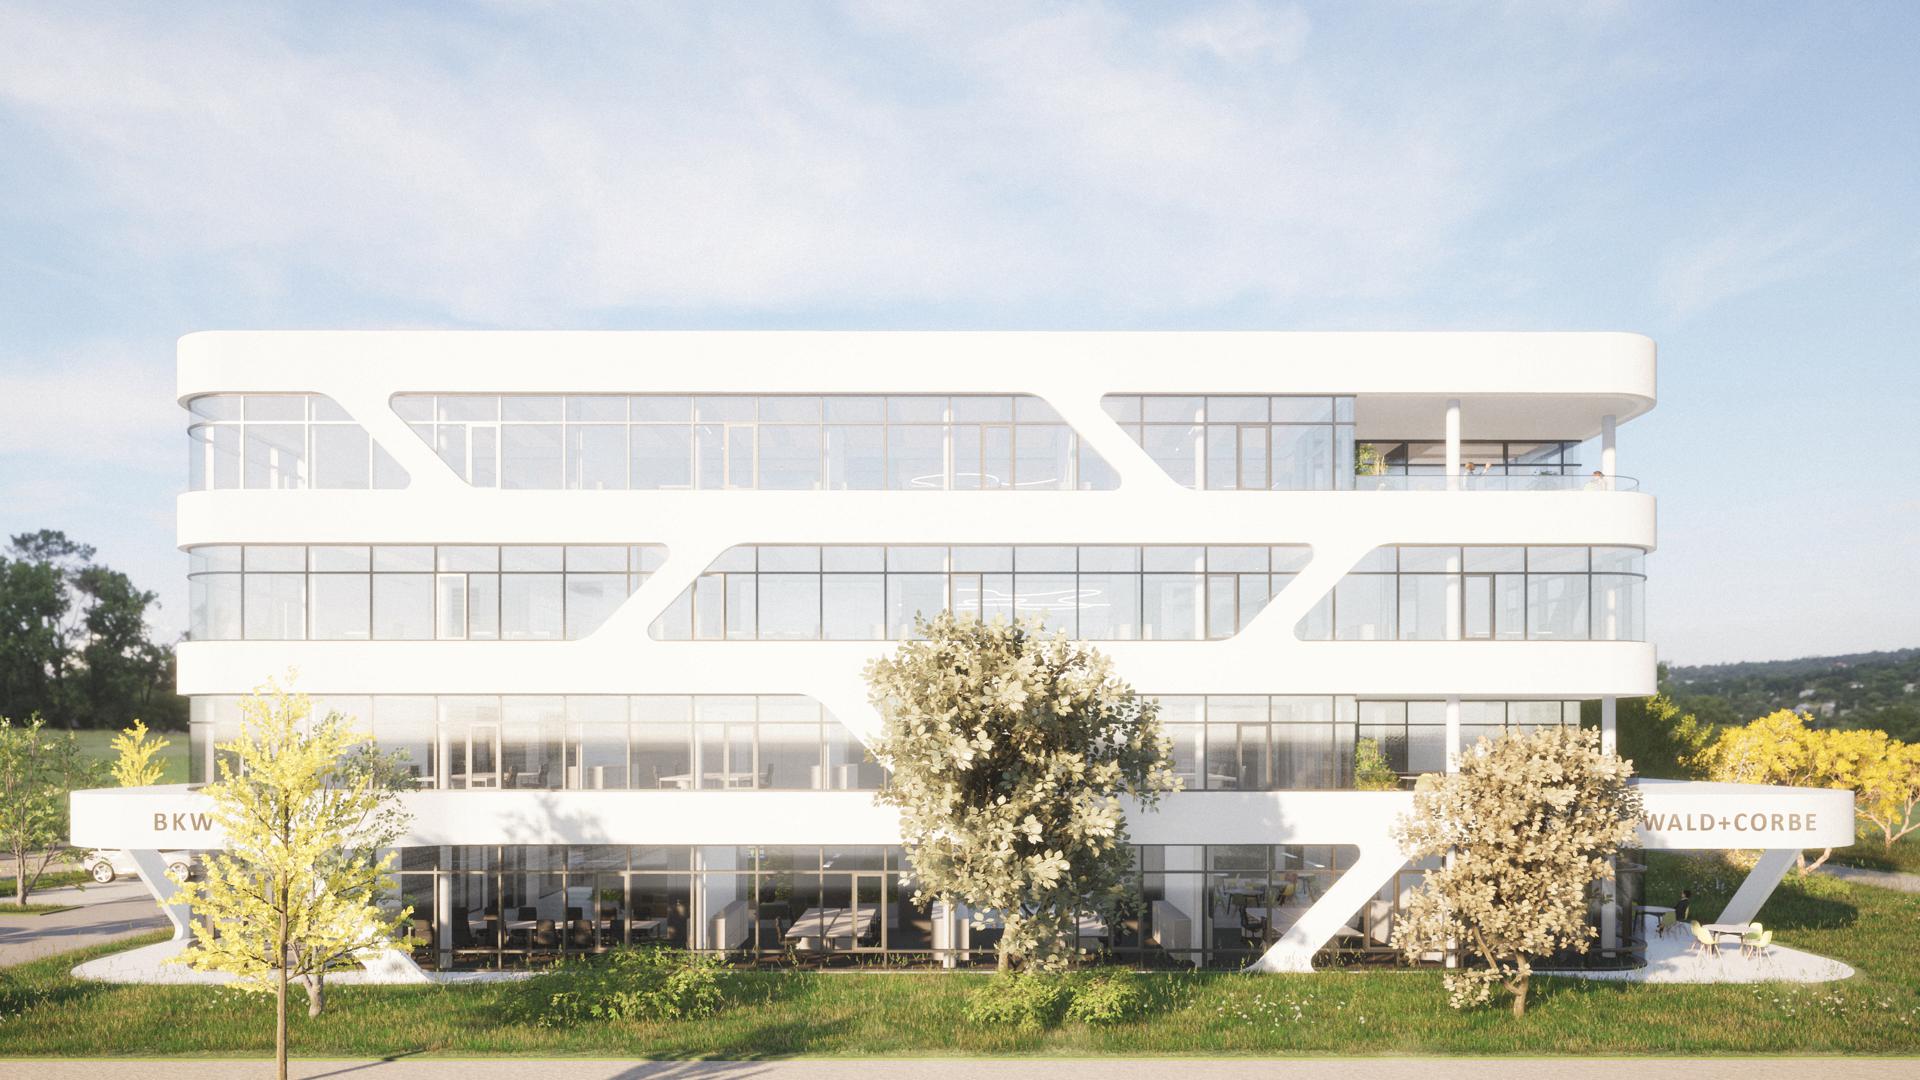 Qualitätsvolle Gestaltung angestrebt: Die Gewerbeentwicklung Baden-Baden GmbH baut für die Consultingfirma eine neue Bürozentrale.